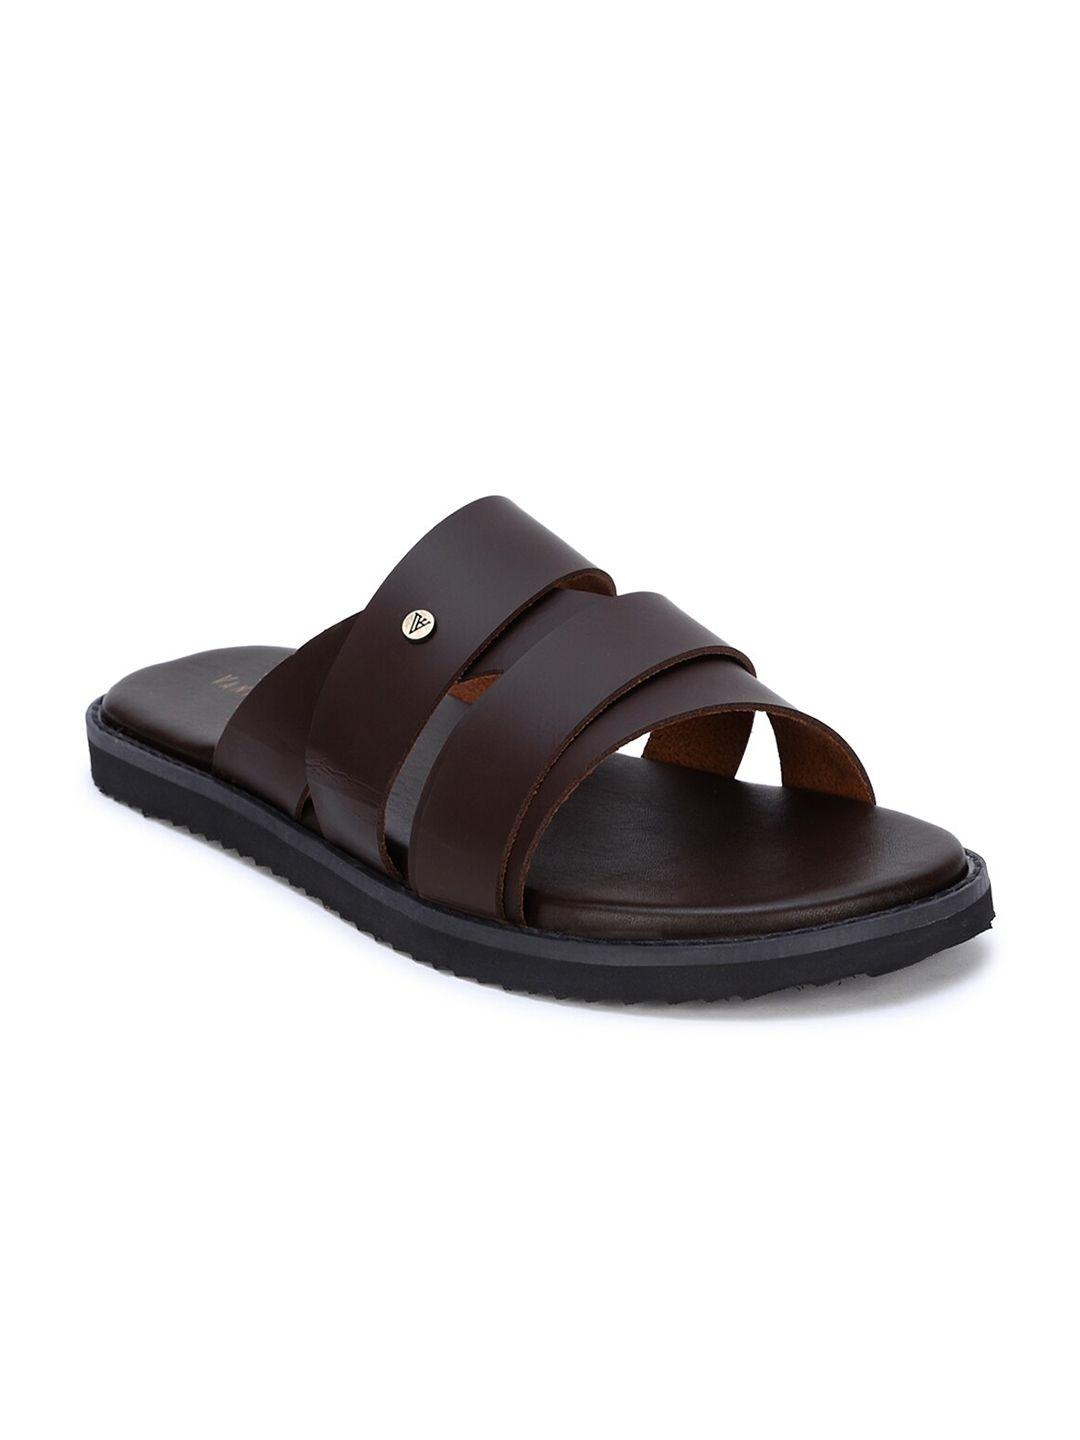 van heusen men brown leather comfort sandals